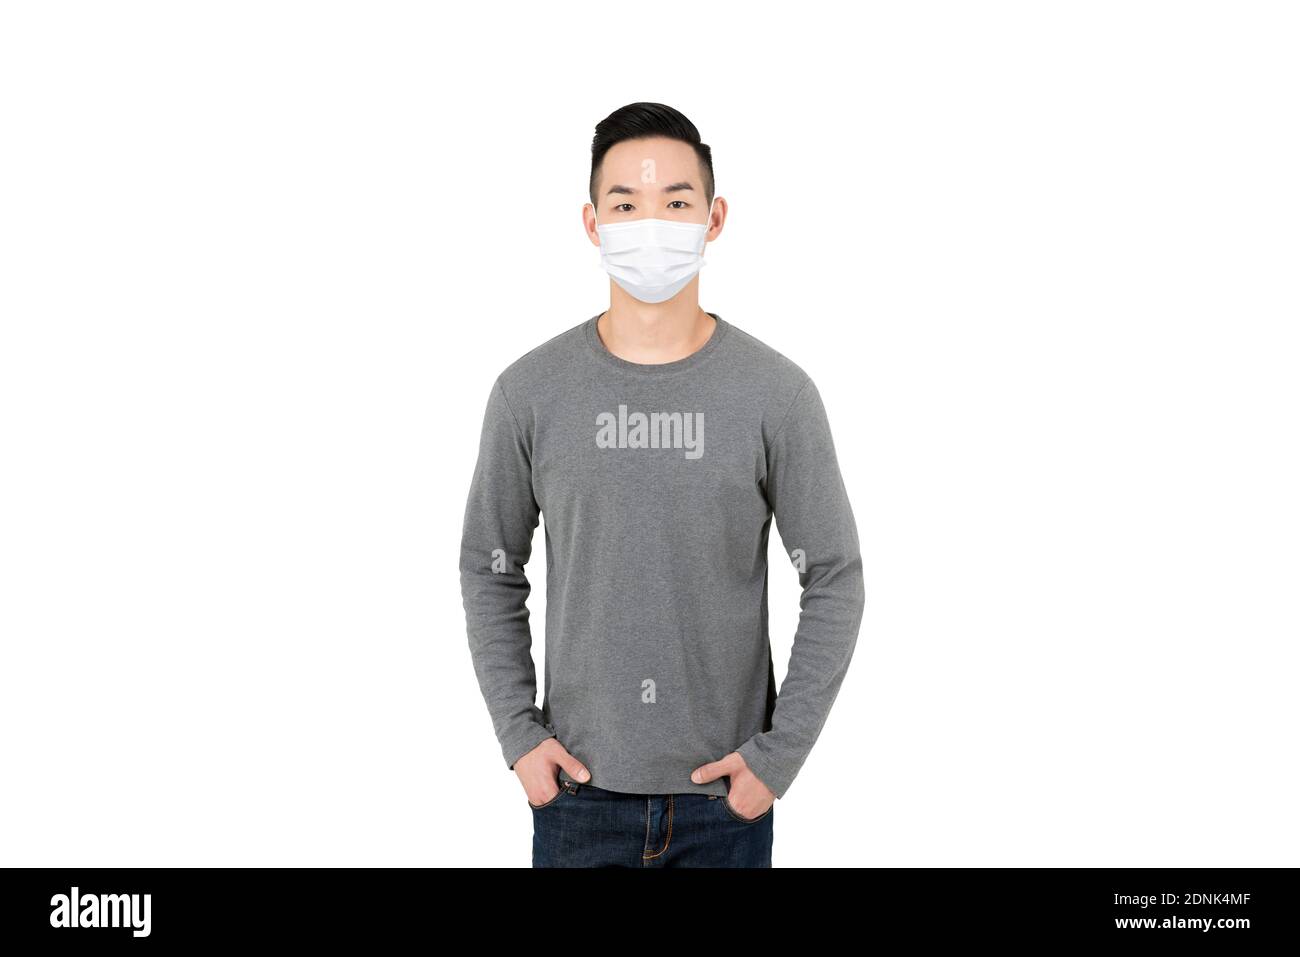 Junge asiatische Mann trägt medizinische Gesichtsmaske isoliert auf weiß Hintergrund für Covid-19 Schutz und neue normale Konzepte Stockfoto